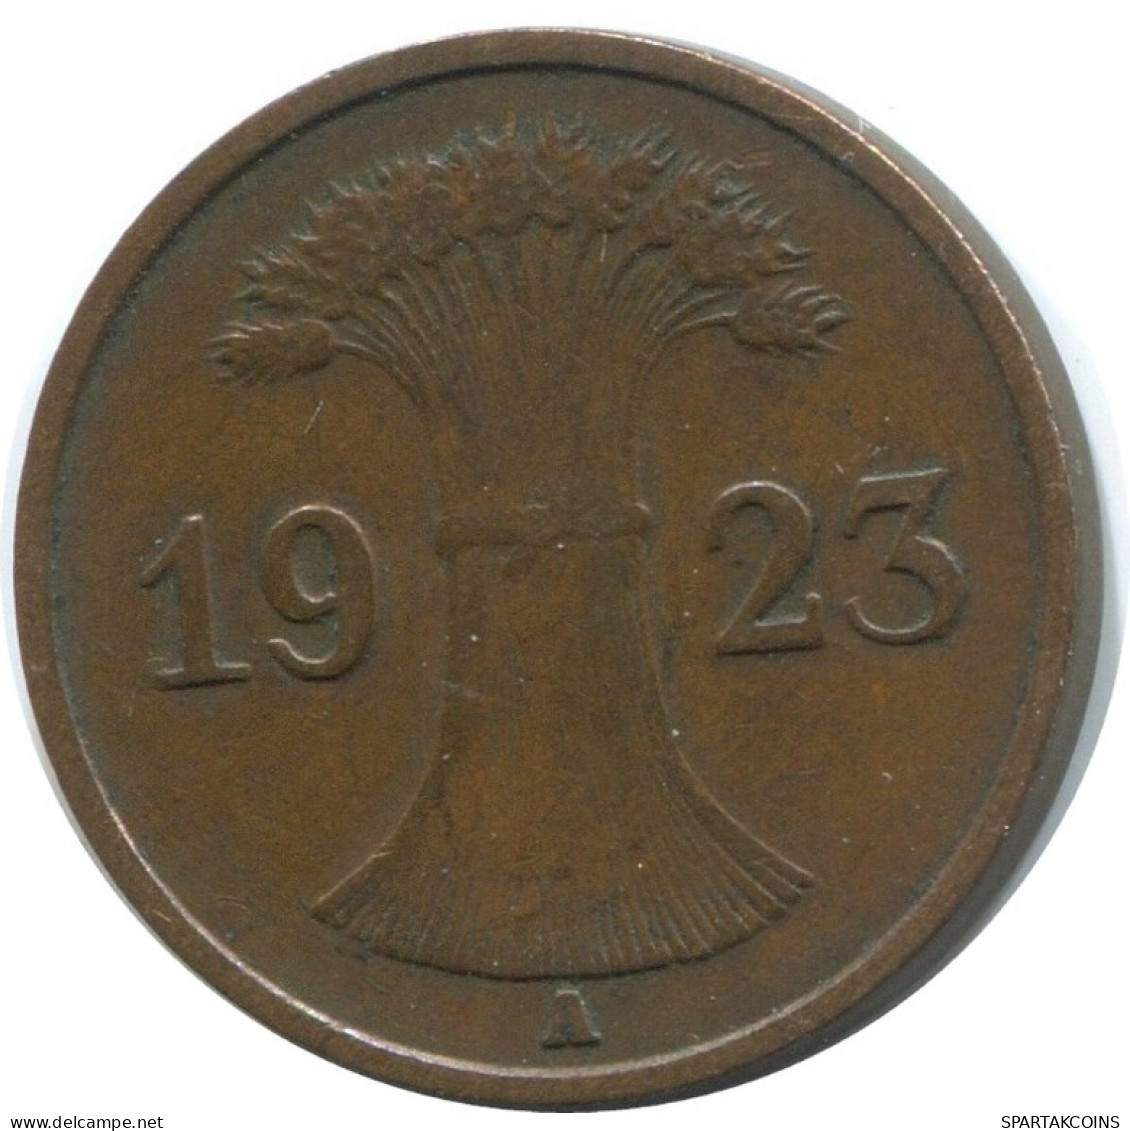 1 RENTENPFENNIG 1923 A GERMANY Coin #AD432.9.U.A - 1 Renten- & 1 Reichspfennig